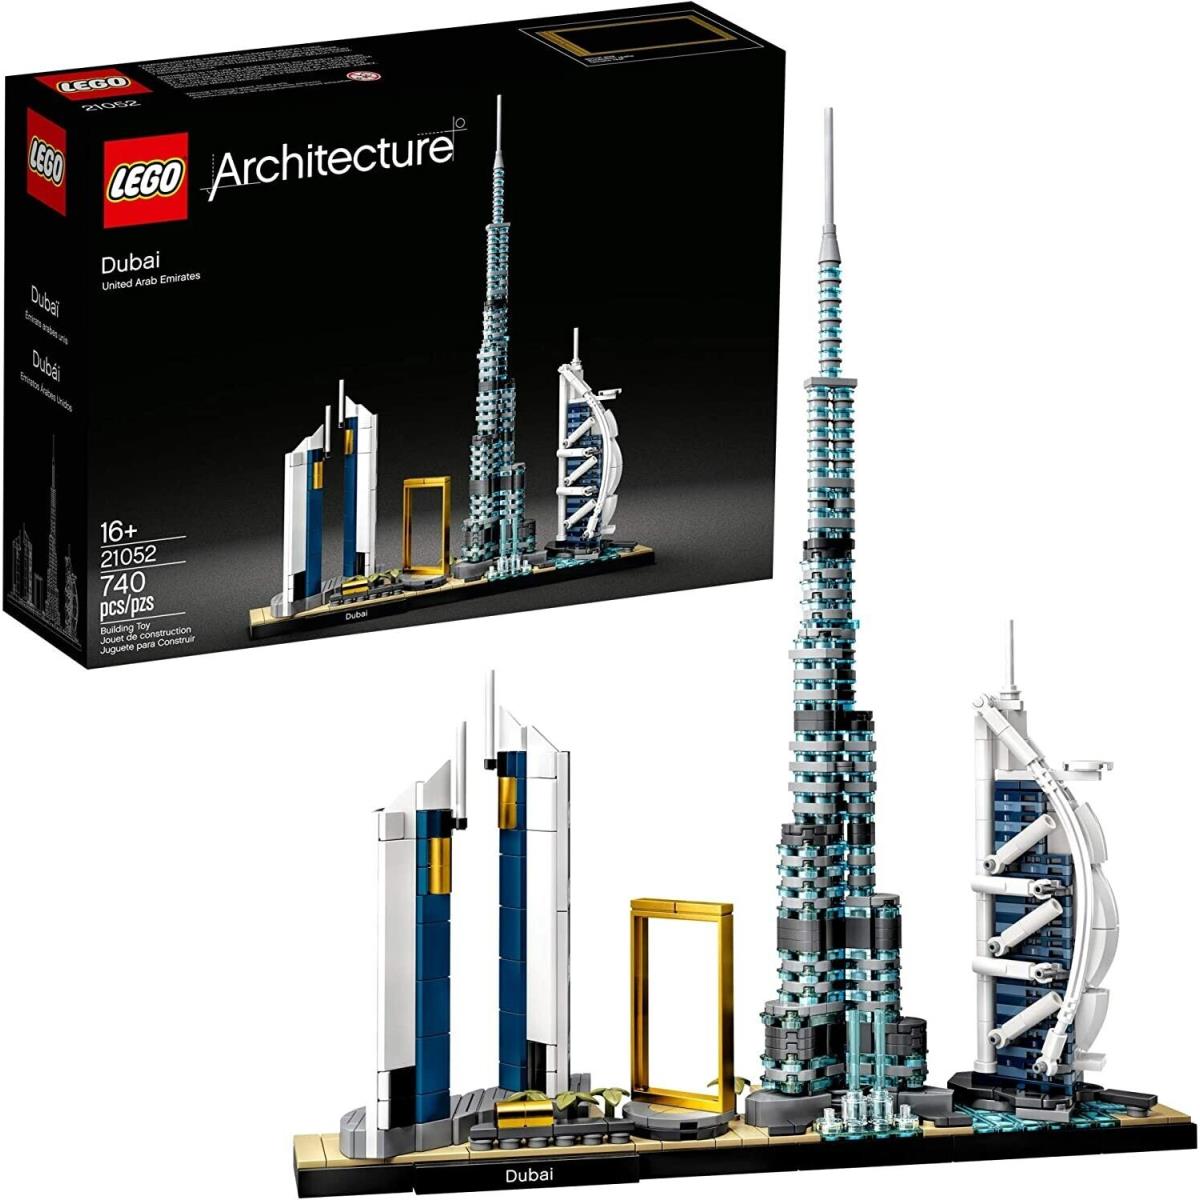 Lego Dubai Architecture 21052 Retired Set 714 Pieces Ages 16+